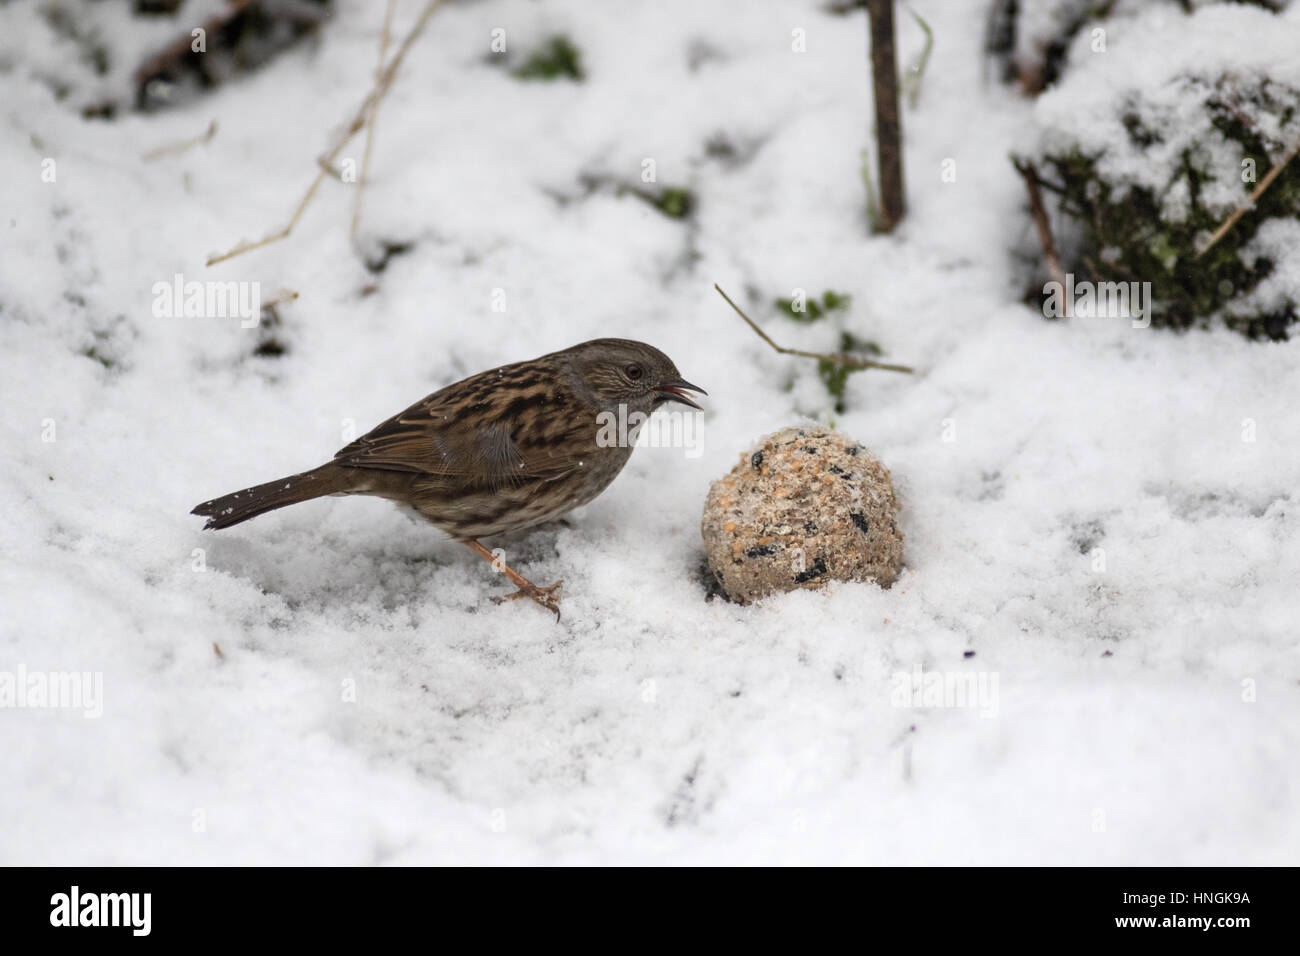 Un nid rss dans un jardin du Yorkshire au cours d'une période d'hiver Banque D'Images